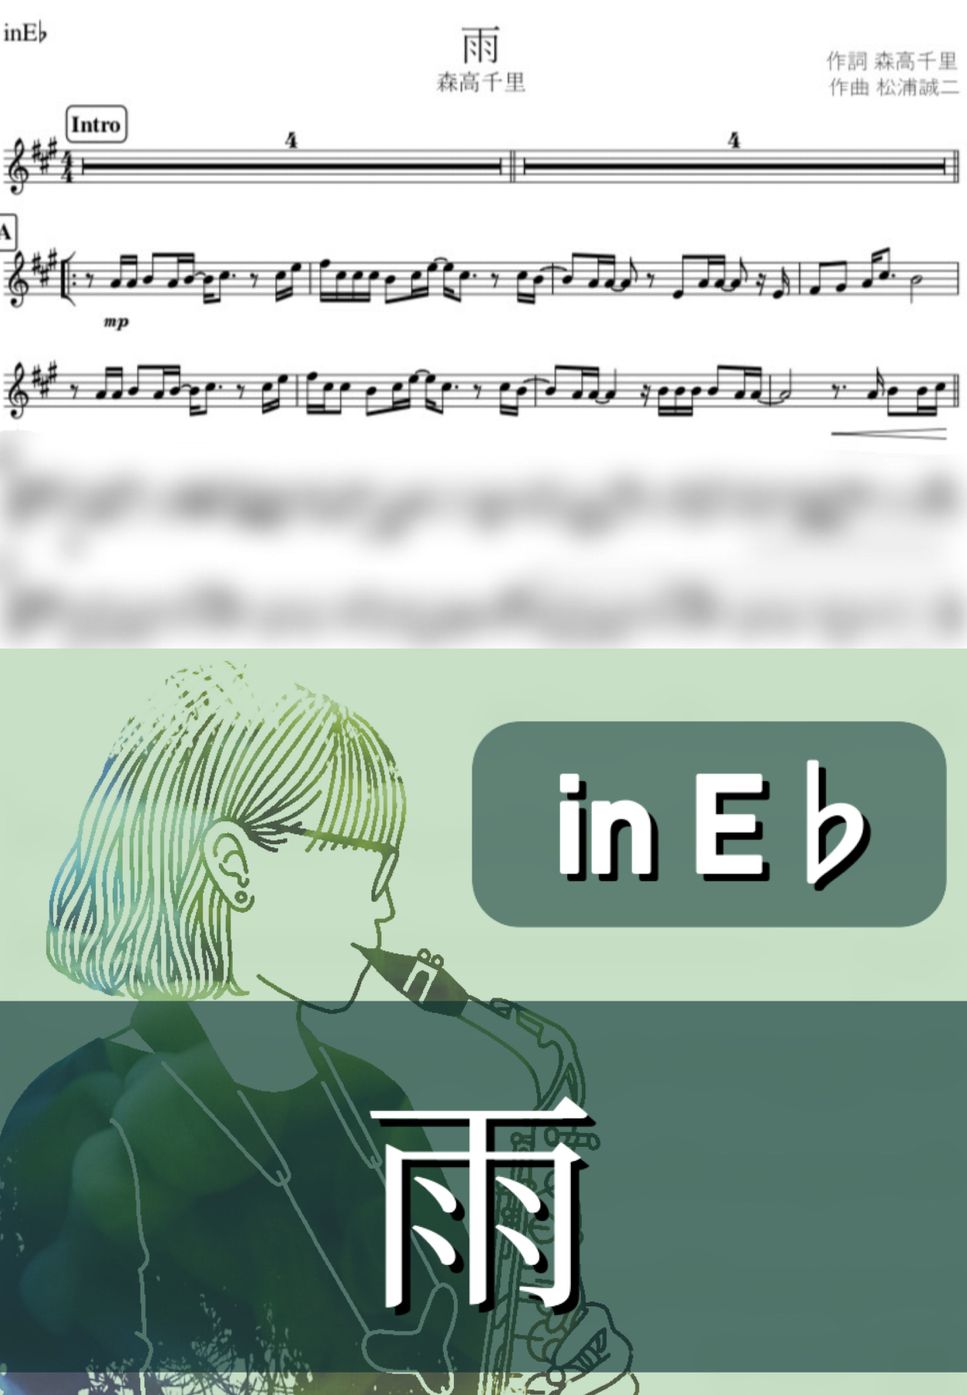 森高千里 - 雨 (E♭) by kanamusic